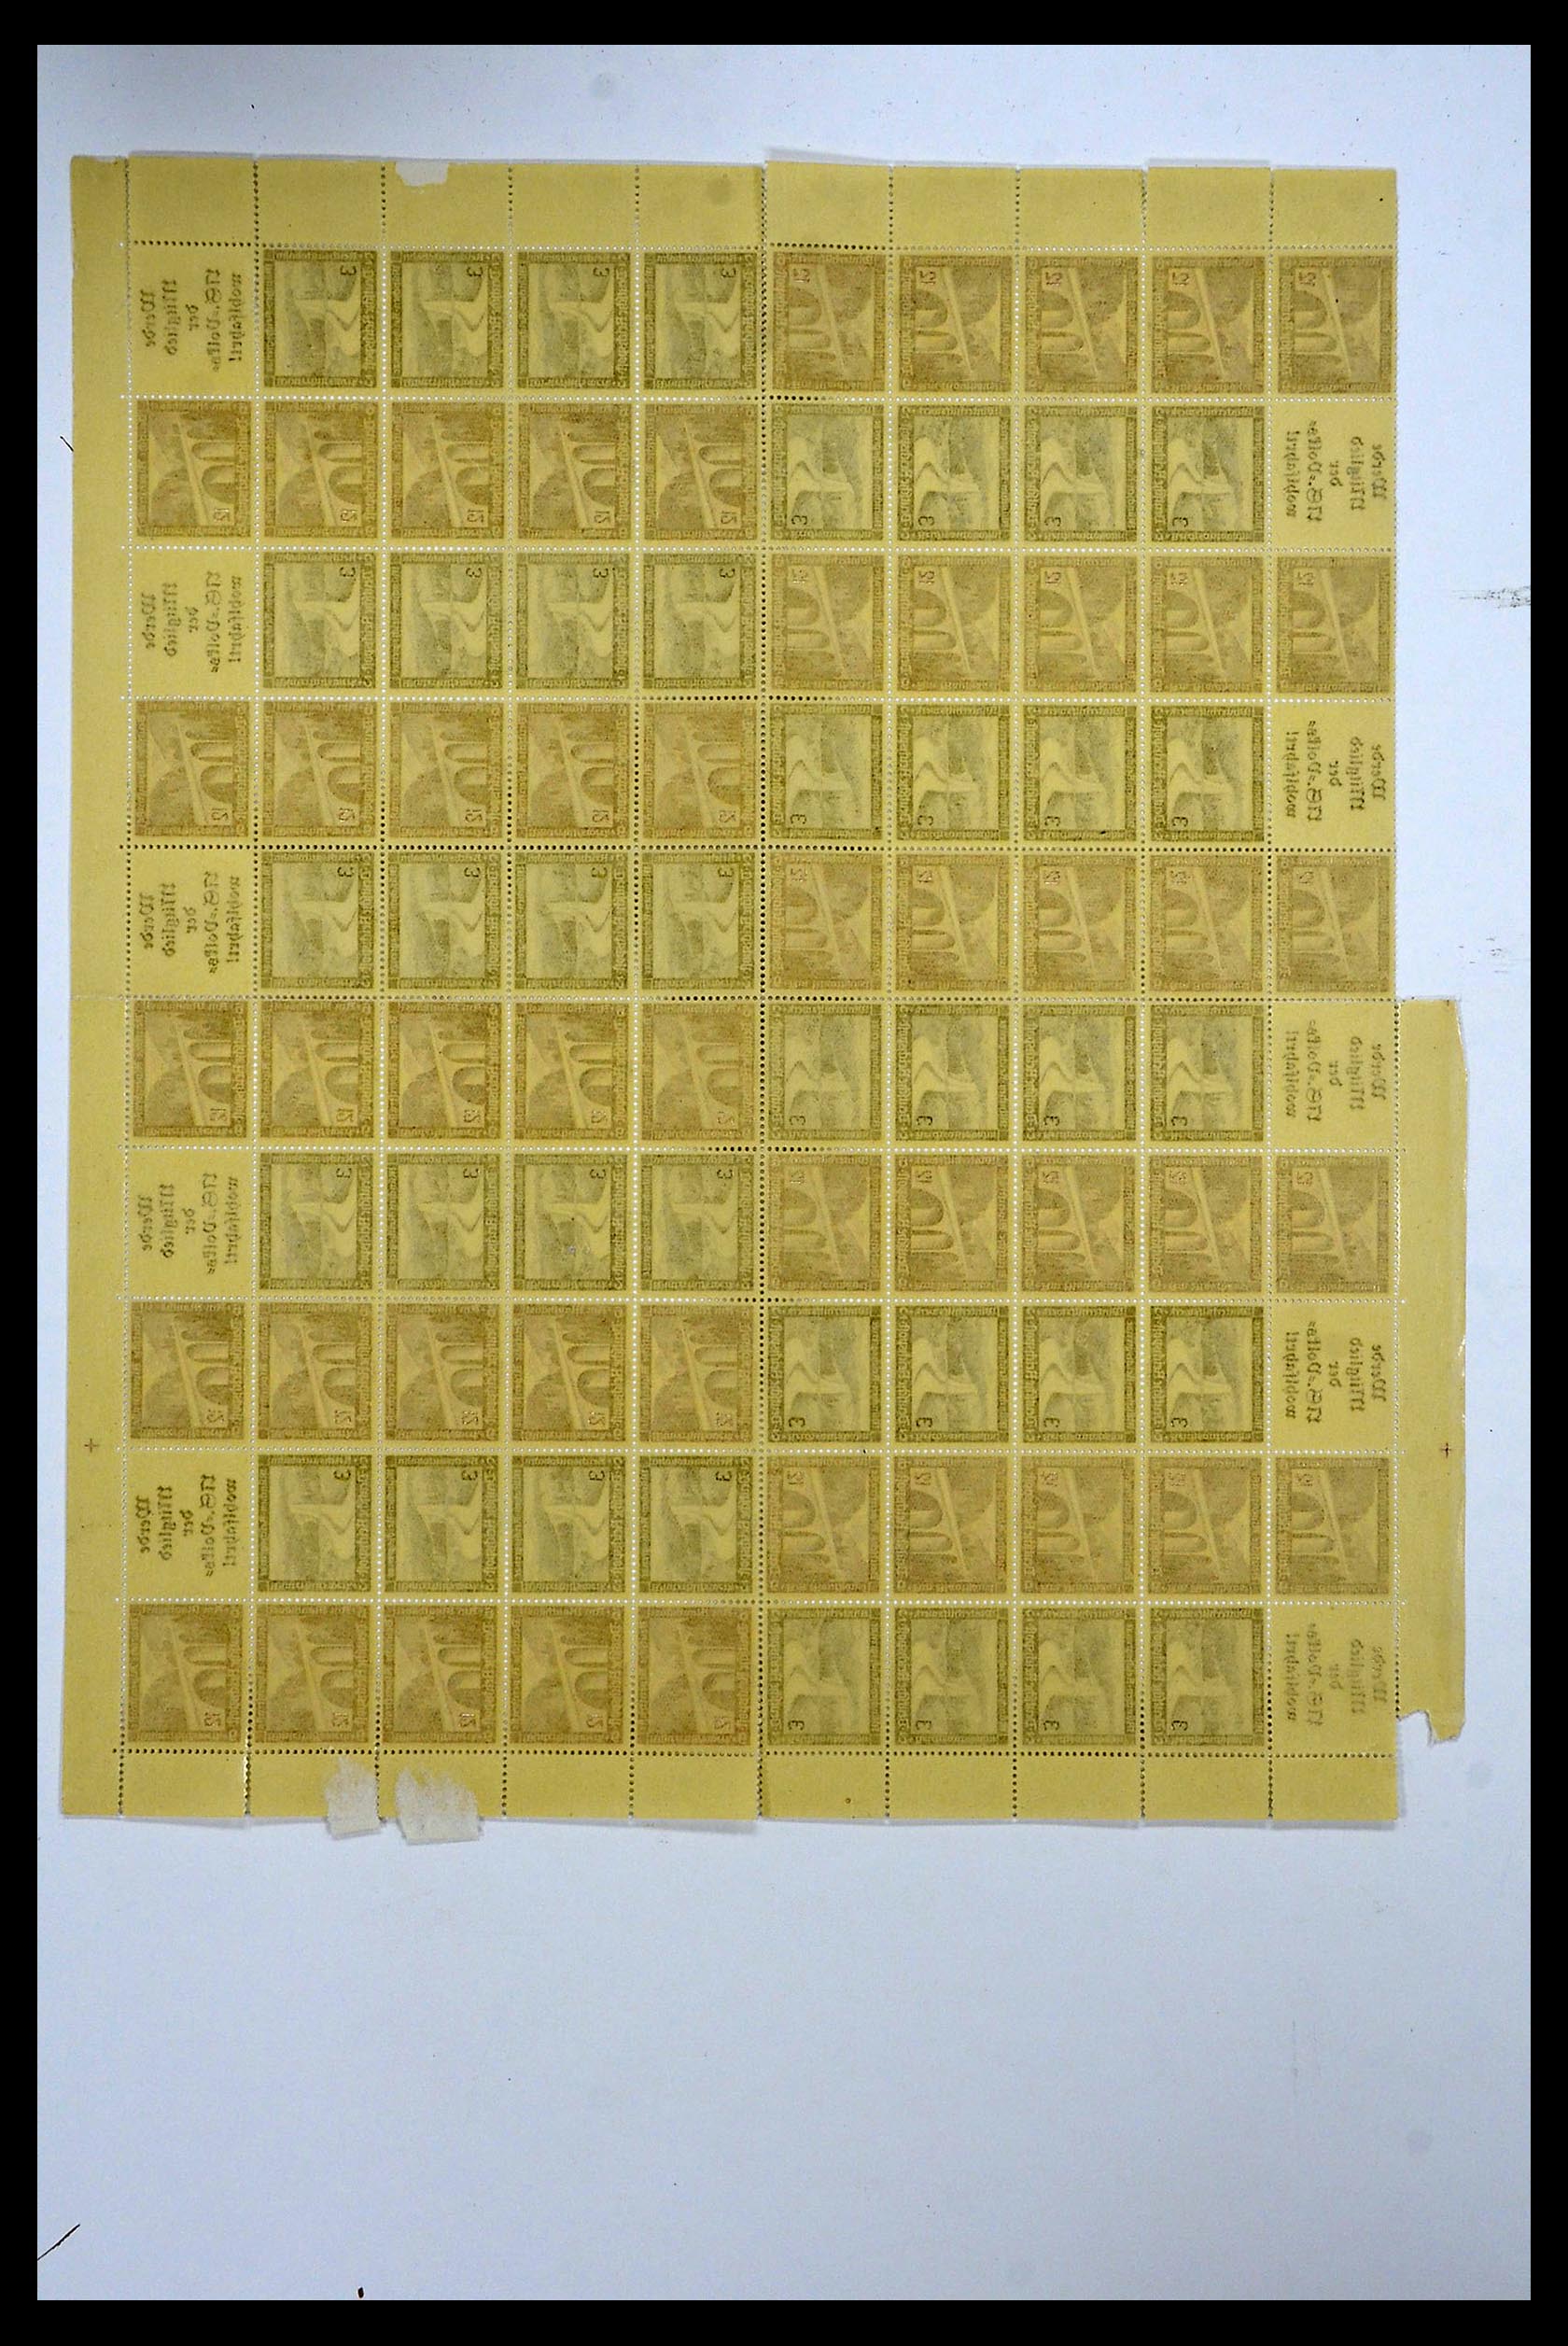 34164 065 - Stamp collection 34164 German Reich Markenheftchenbogen 1933-1942.